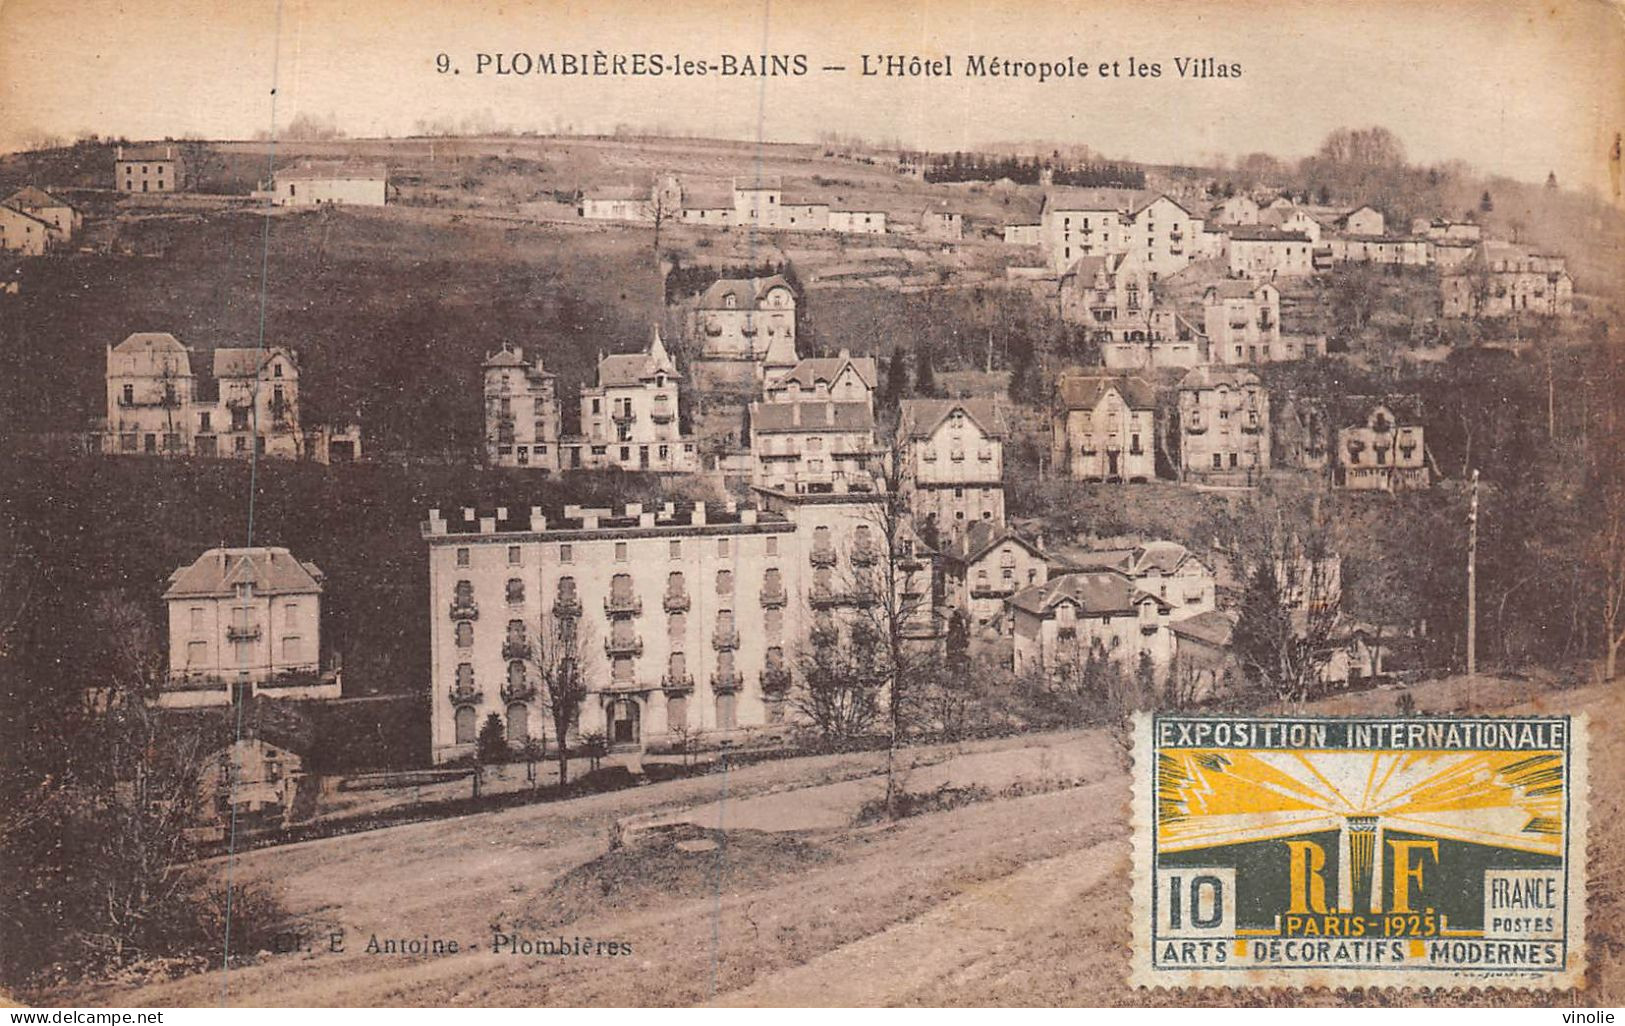 24-5450 : PLOMBIERES-LES-BAINS. HOTEL METROPOLE ET VILLAS - Plombieres Les Bains